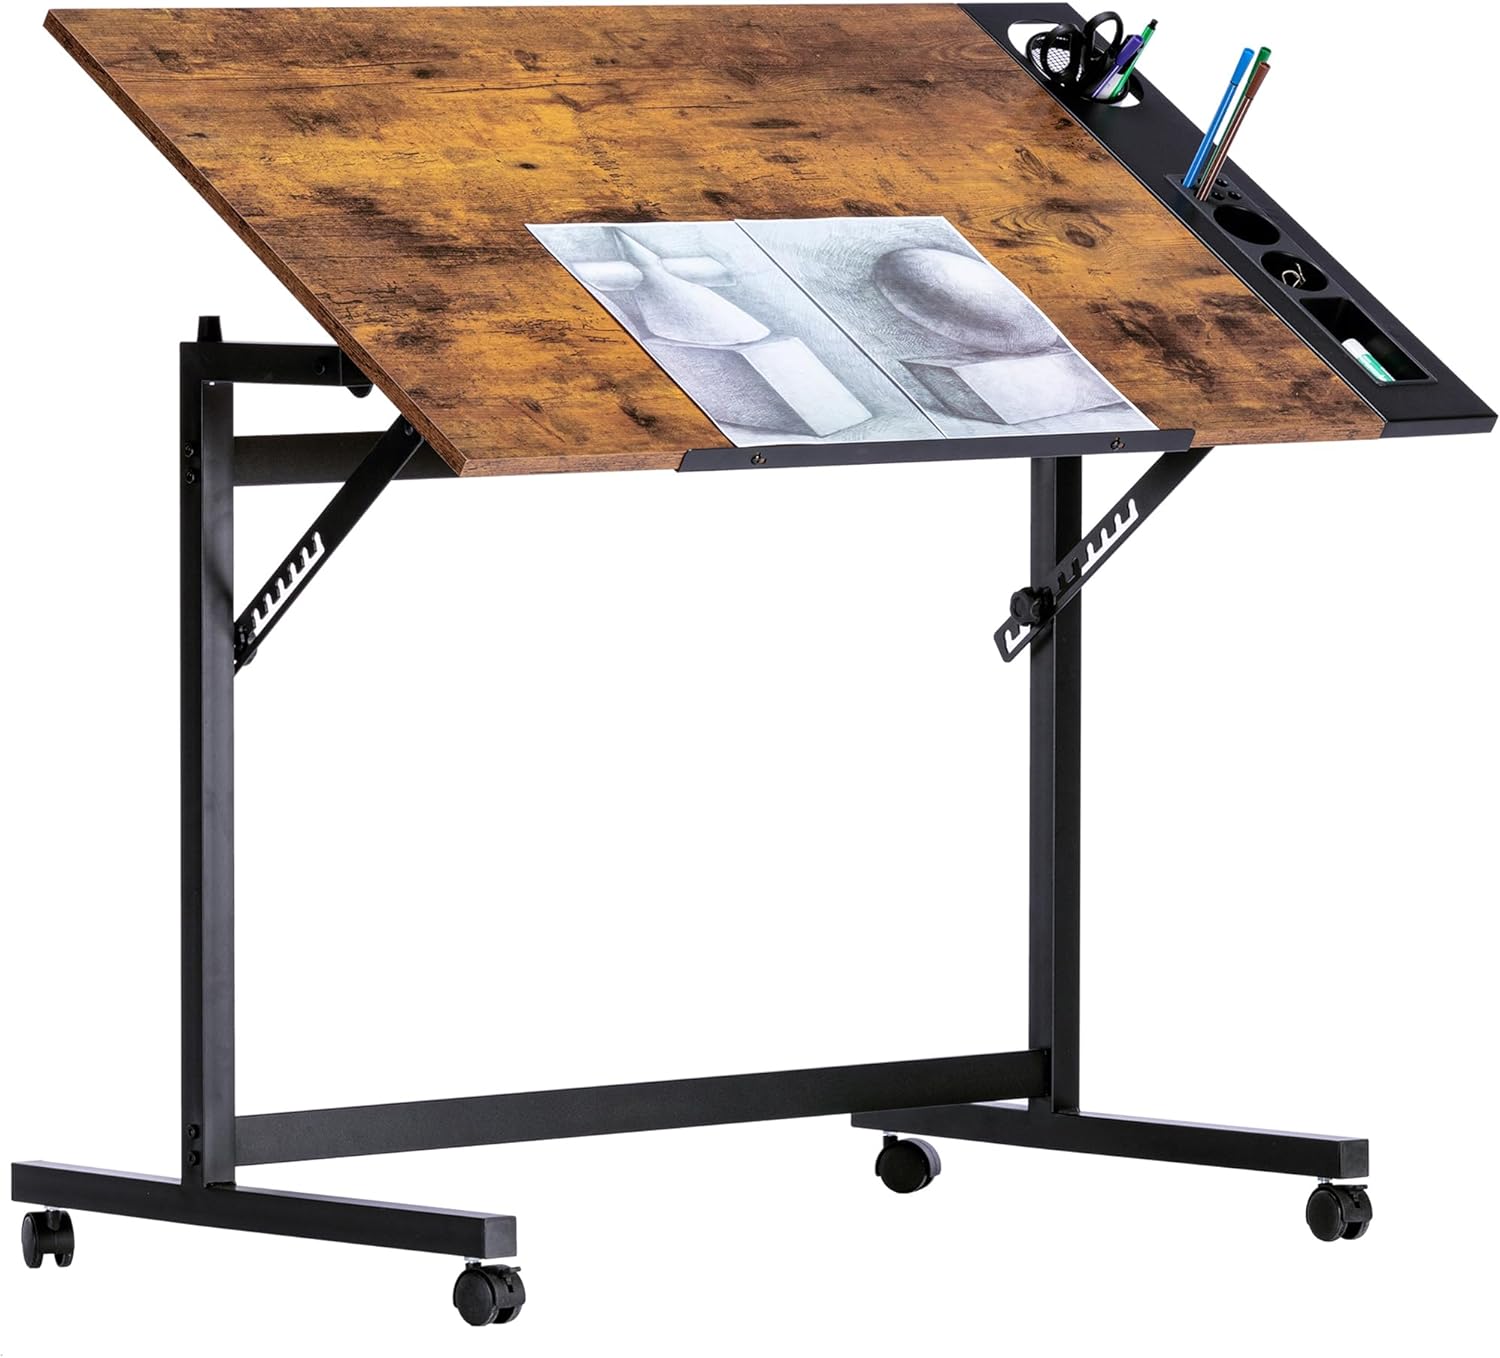 VECELO Vintage Drawing Drafting Table, Adjustable Tilting Top Art Desk Craft Work Station